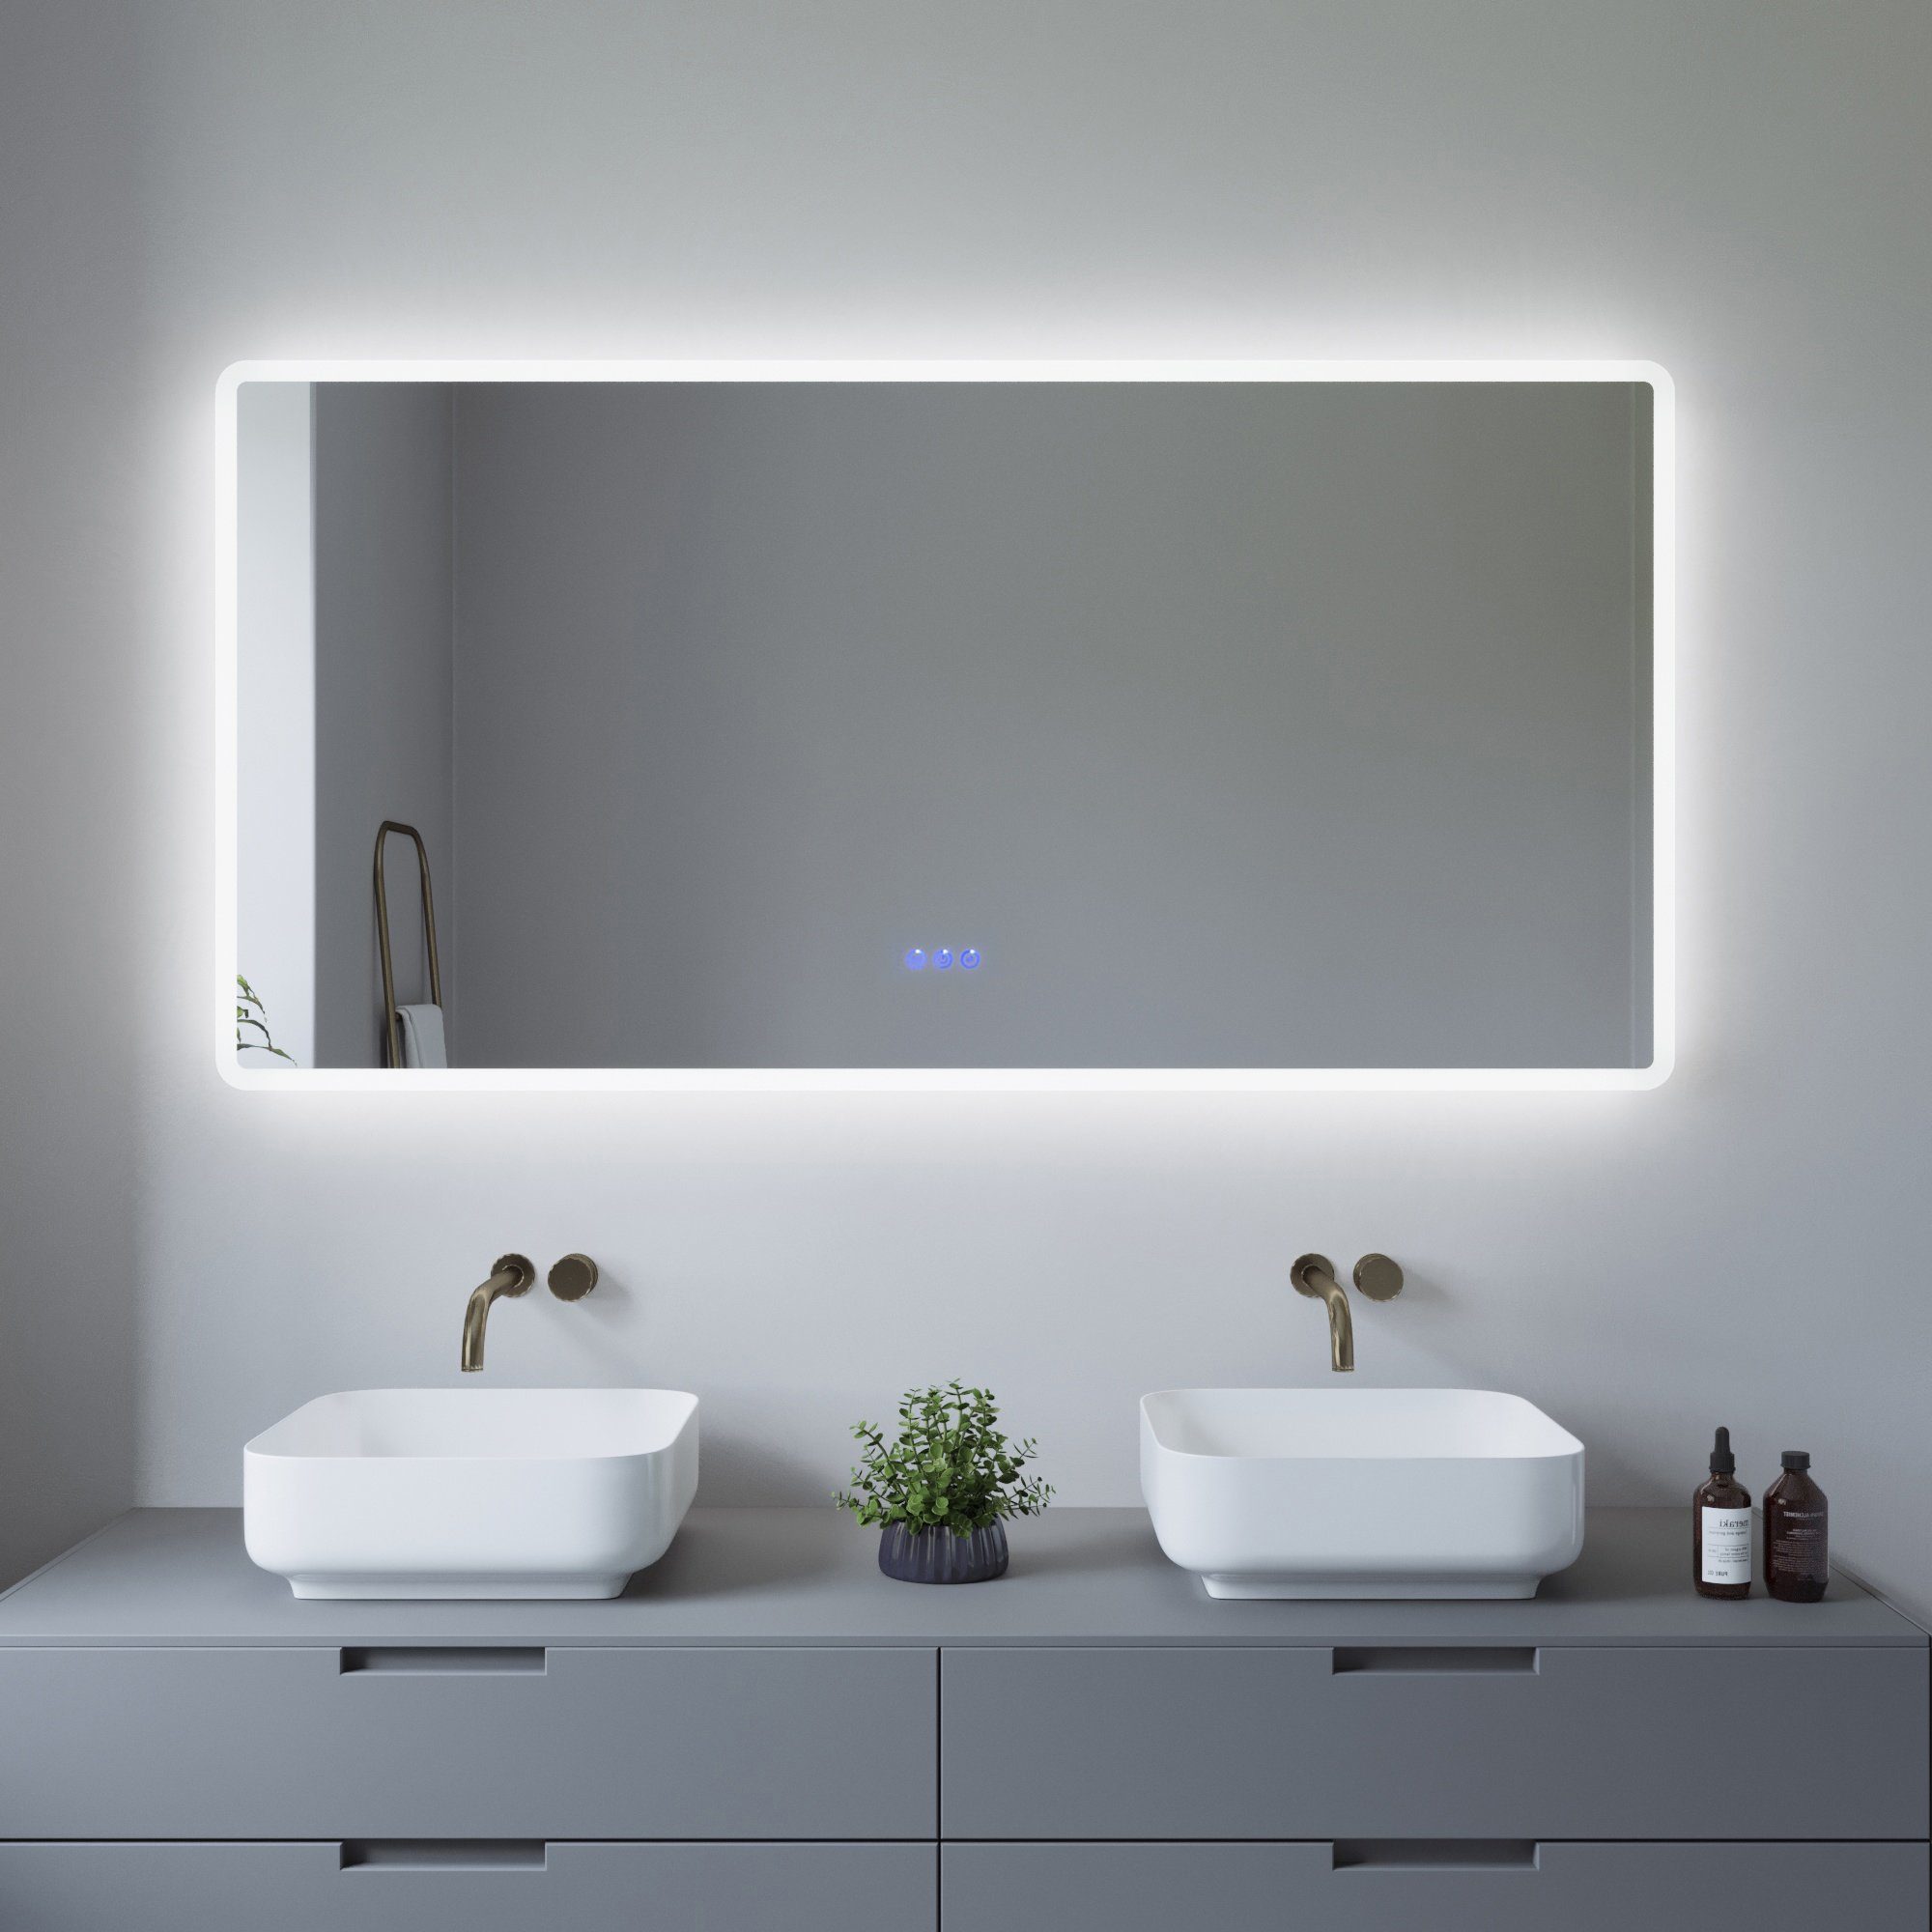 AQUALAVOS Badspiegel LED Badspiegel 140x70 cm Großer Badezimmer Wandspiegel  mit Beleuchtung, 6400K Kaltweiß & Warmweiß 3000K, Energiesparend,  Touchschalter